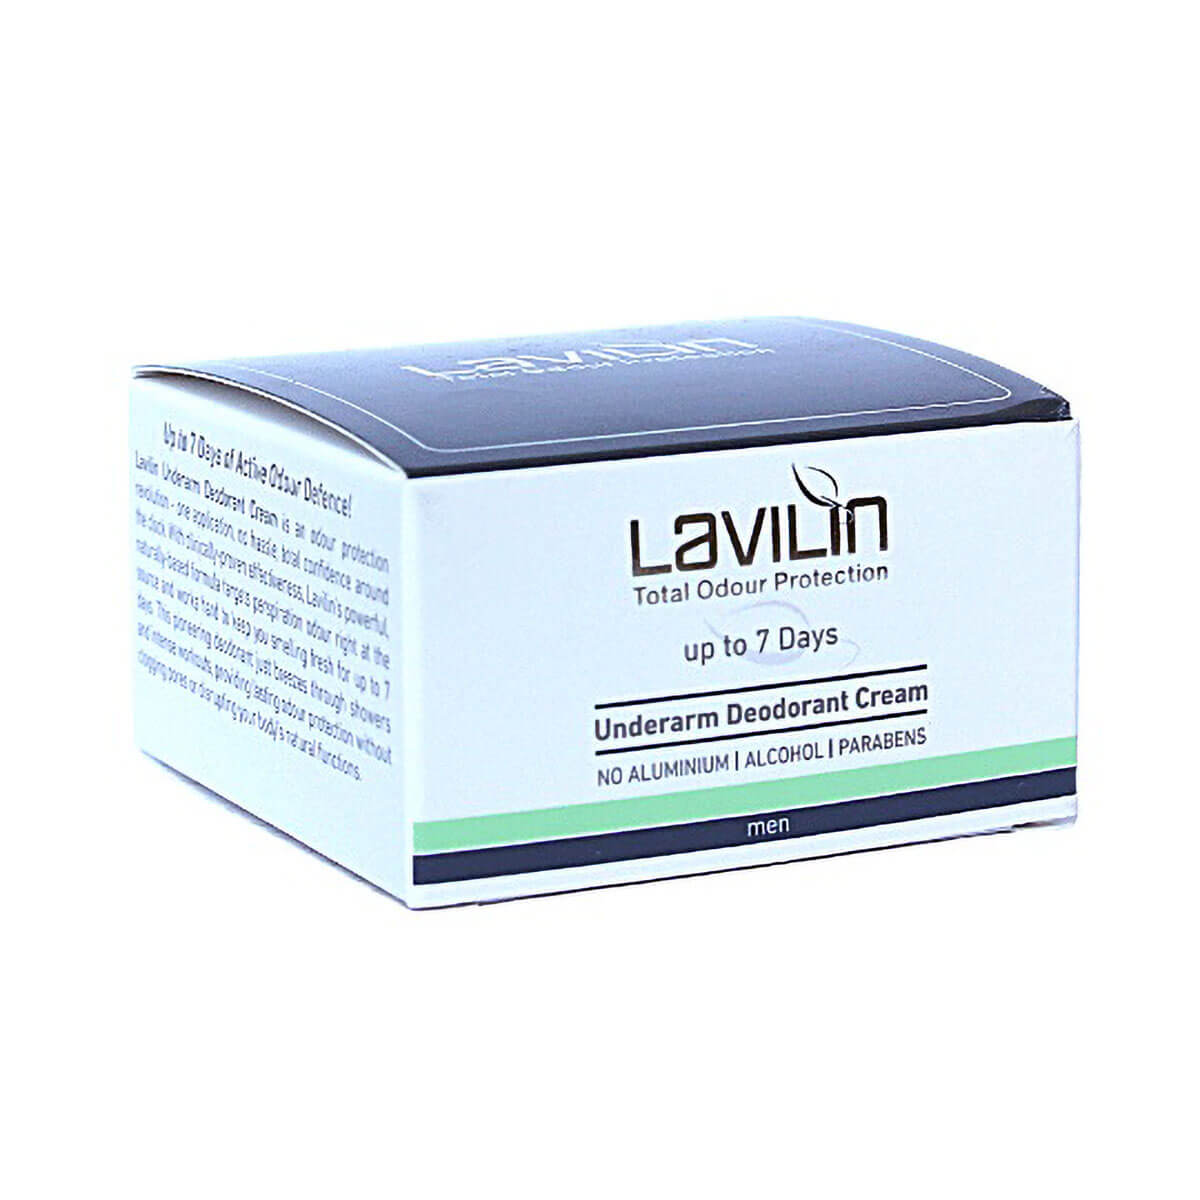 Men's Underarm Deodorant Cream - Lavilin